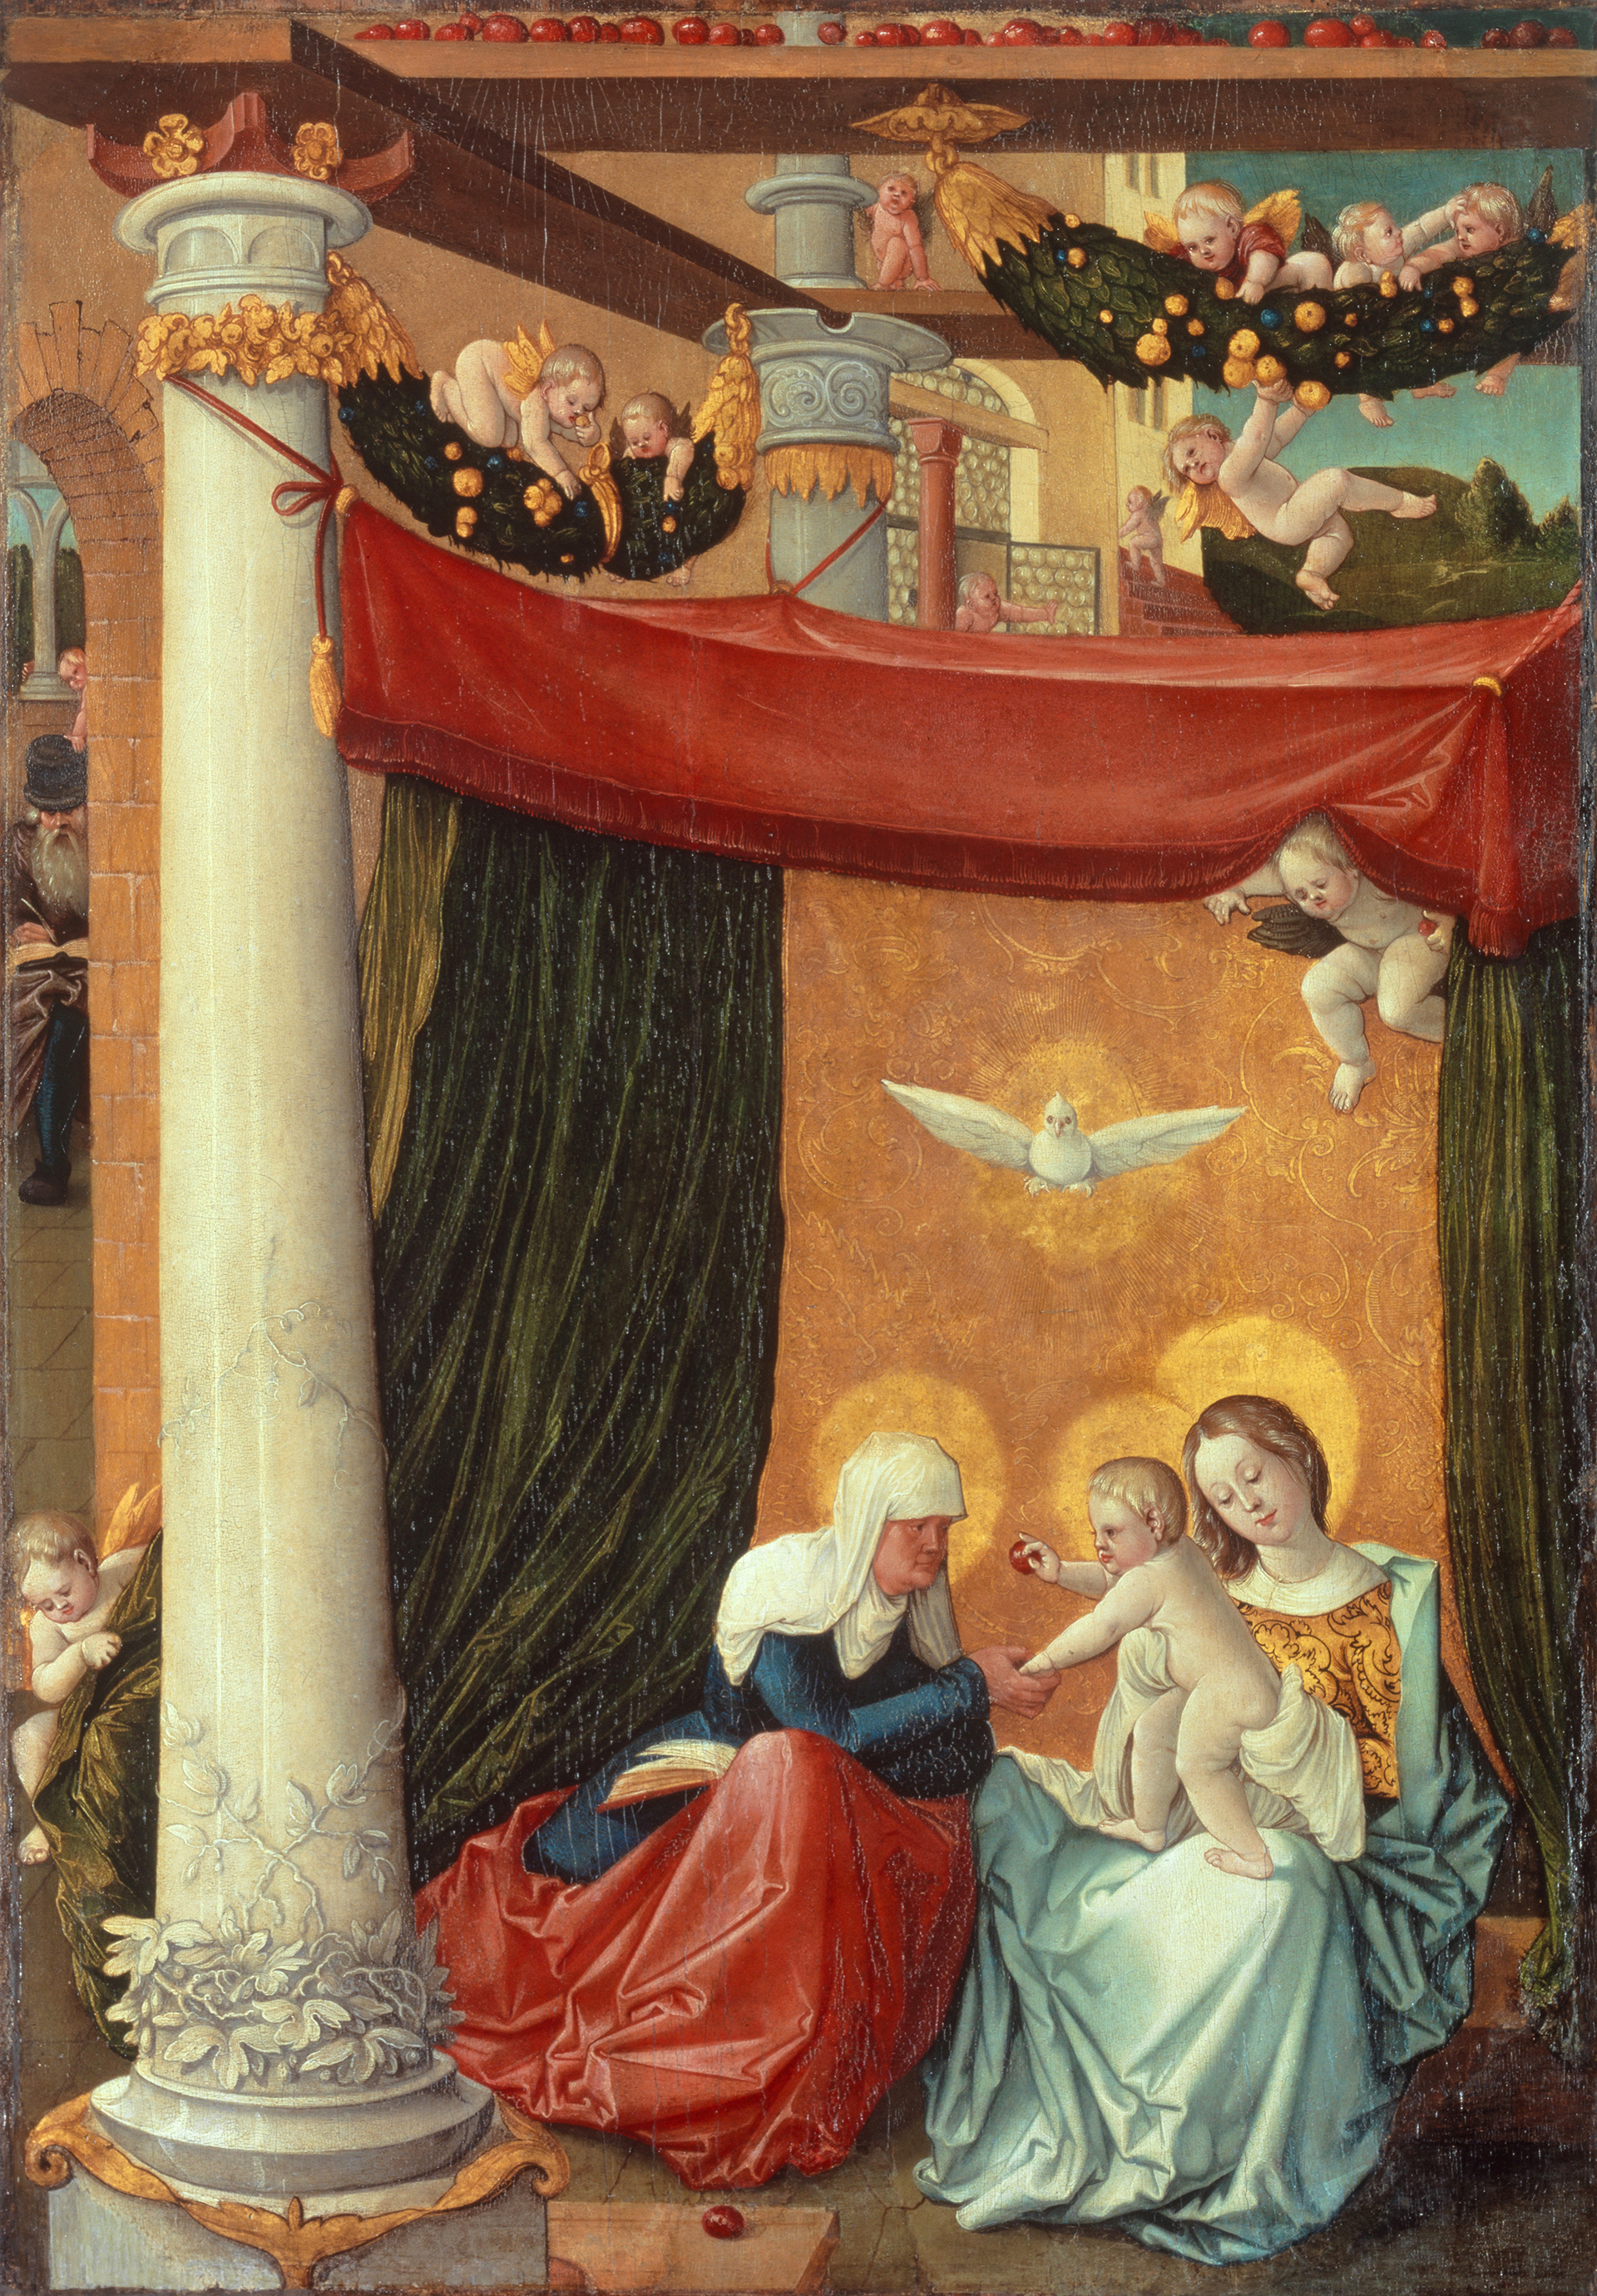 Image de Hans Baldung Grien : Sainte Anne trinitaire, vers 1510/15